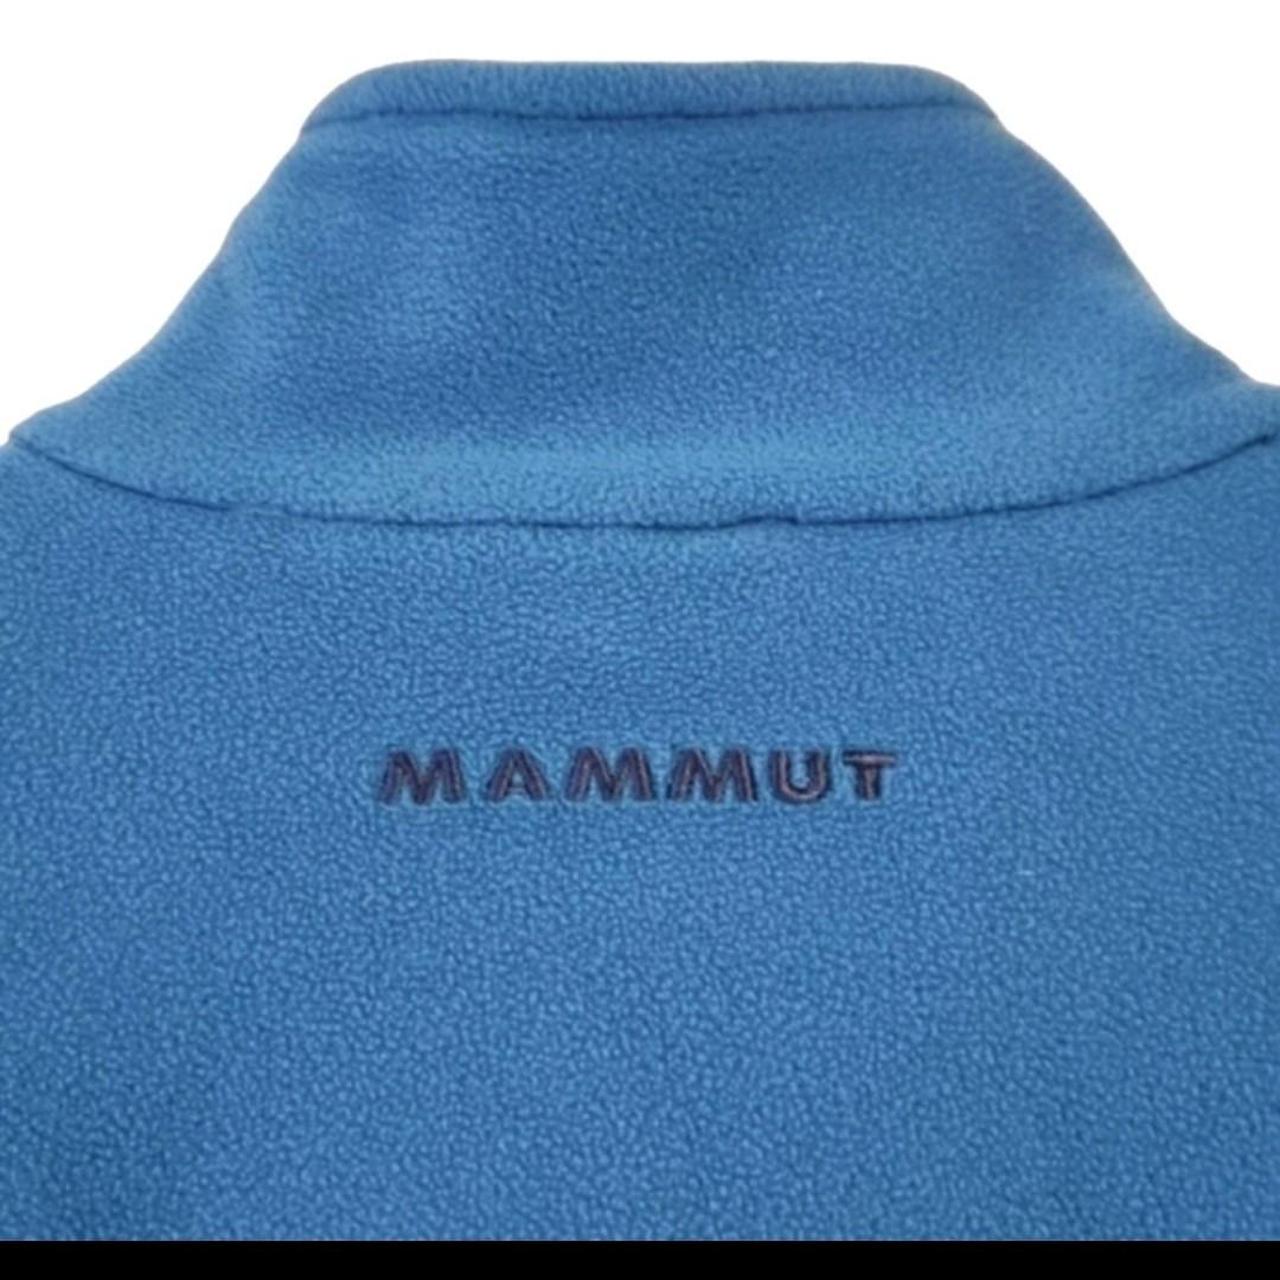 Mammut Women's Blue Top (4)